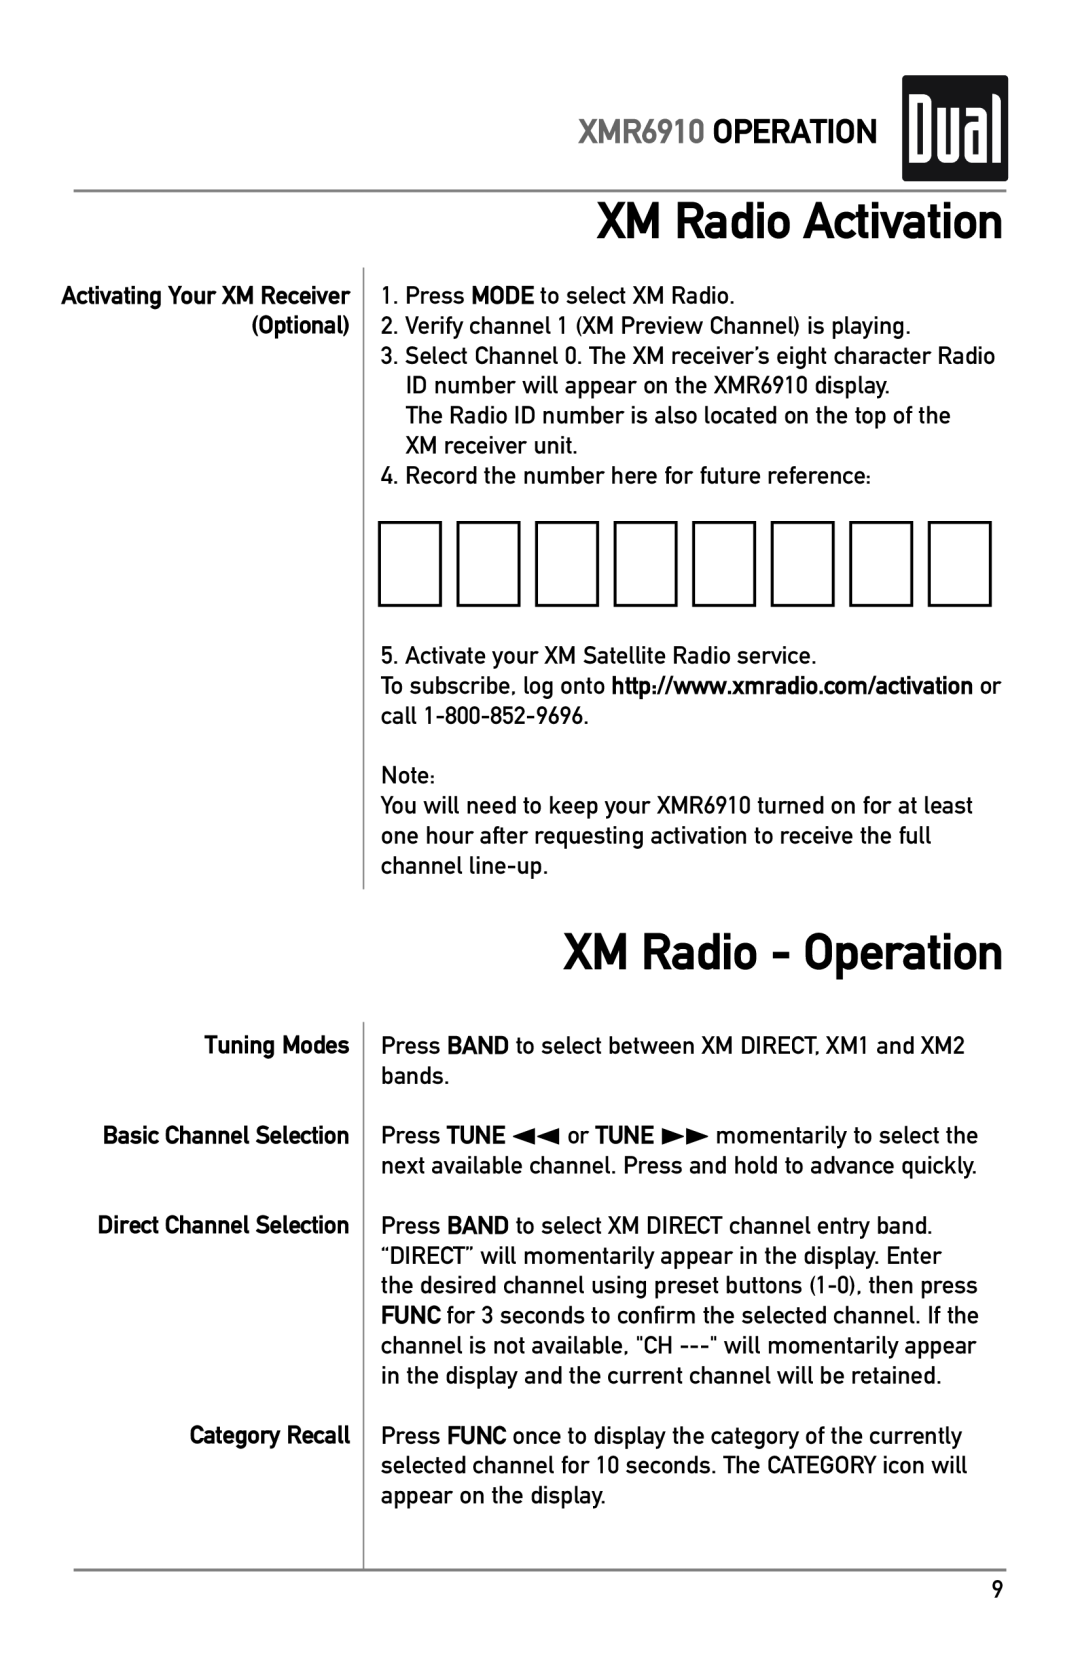 XM Satellite Radio XM Radio Activation, XM Radio - Operation, Tuning Modes, Category Recall, XMR6910 OPERATION 